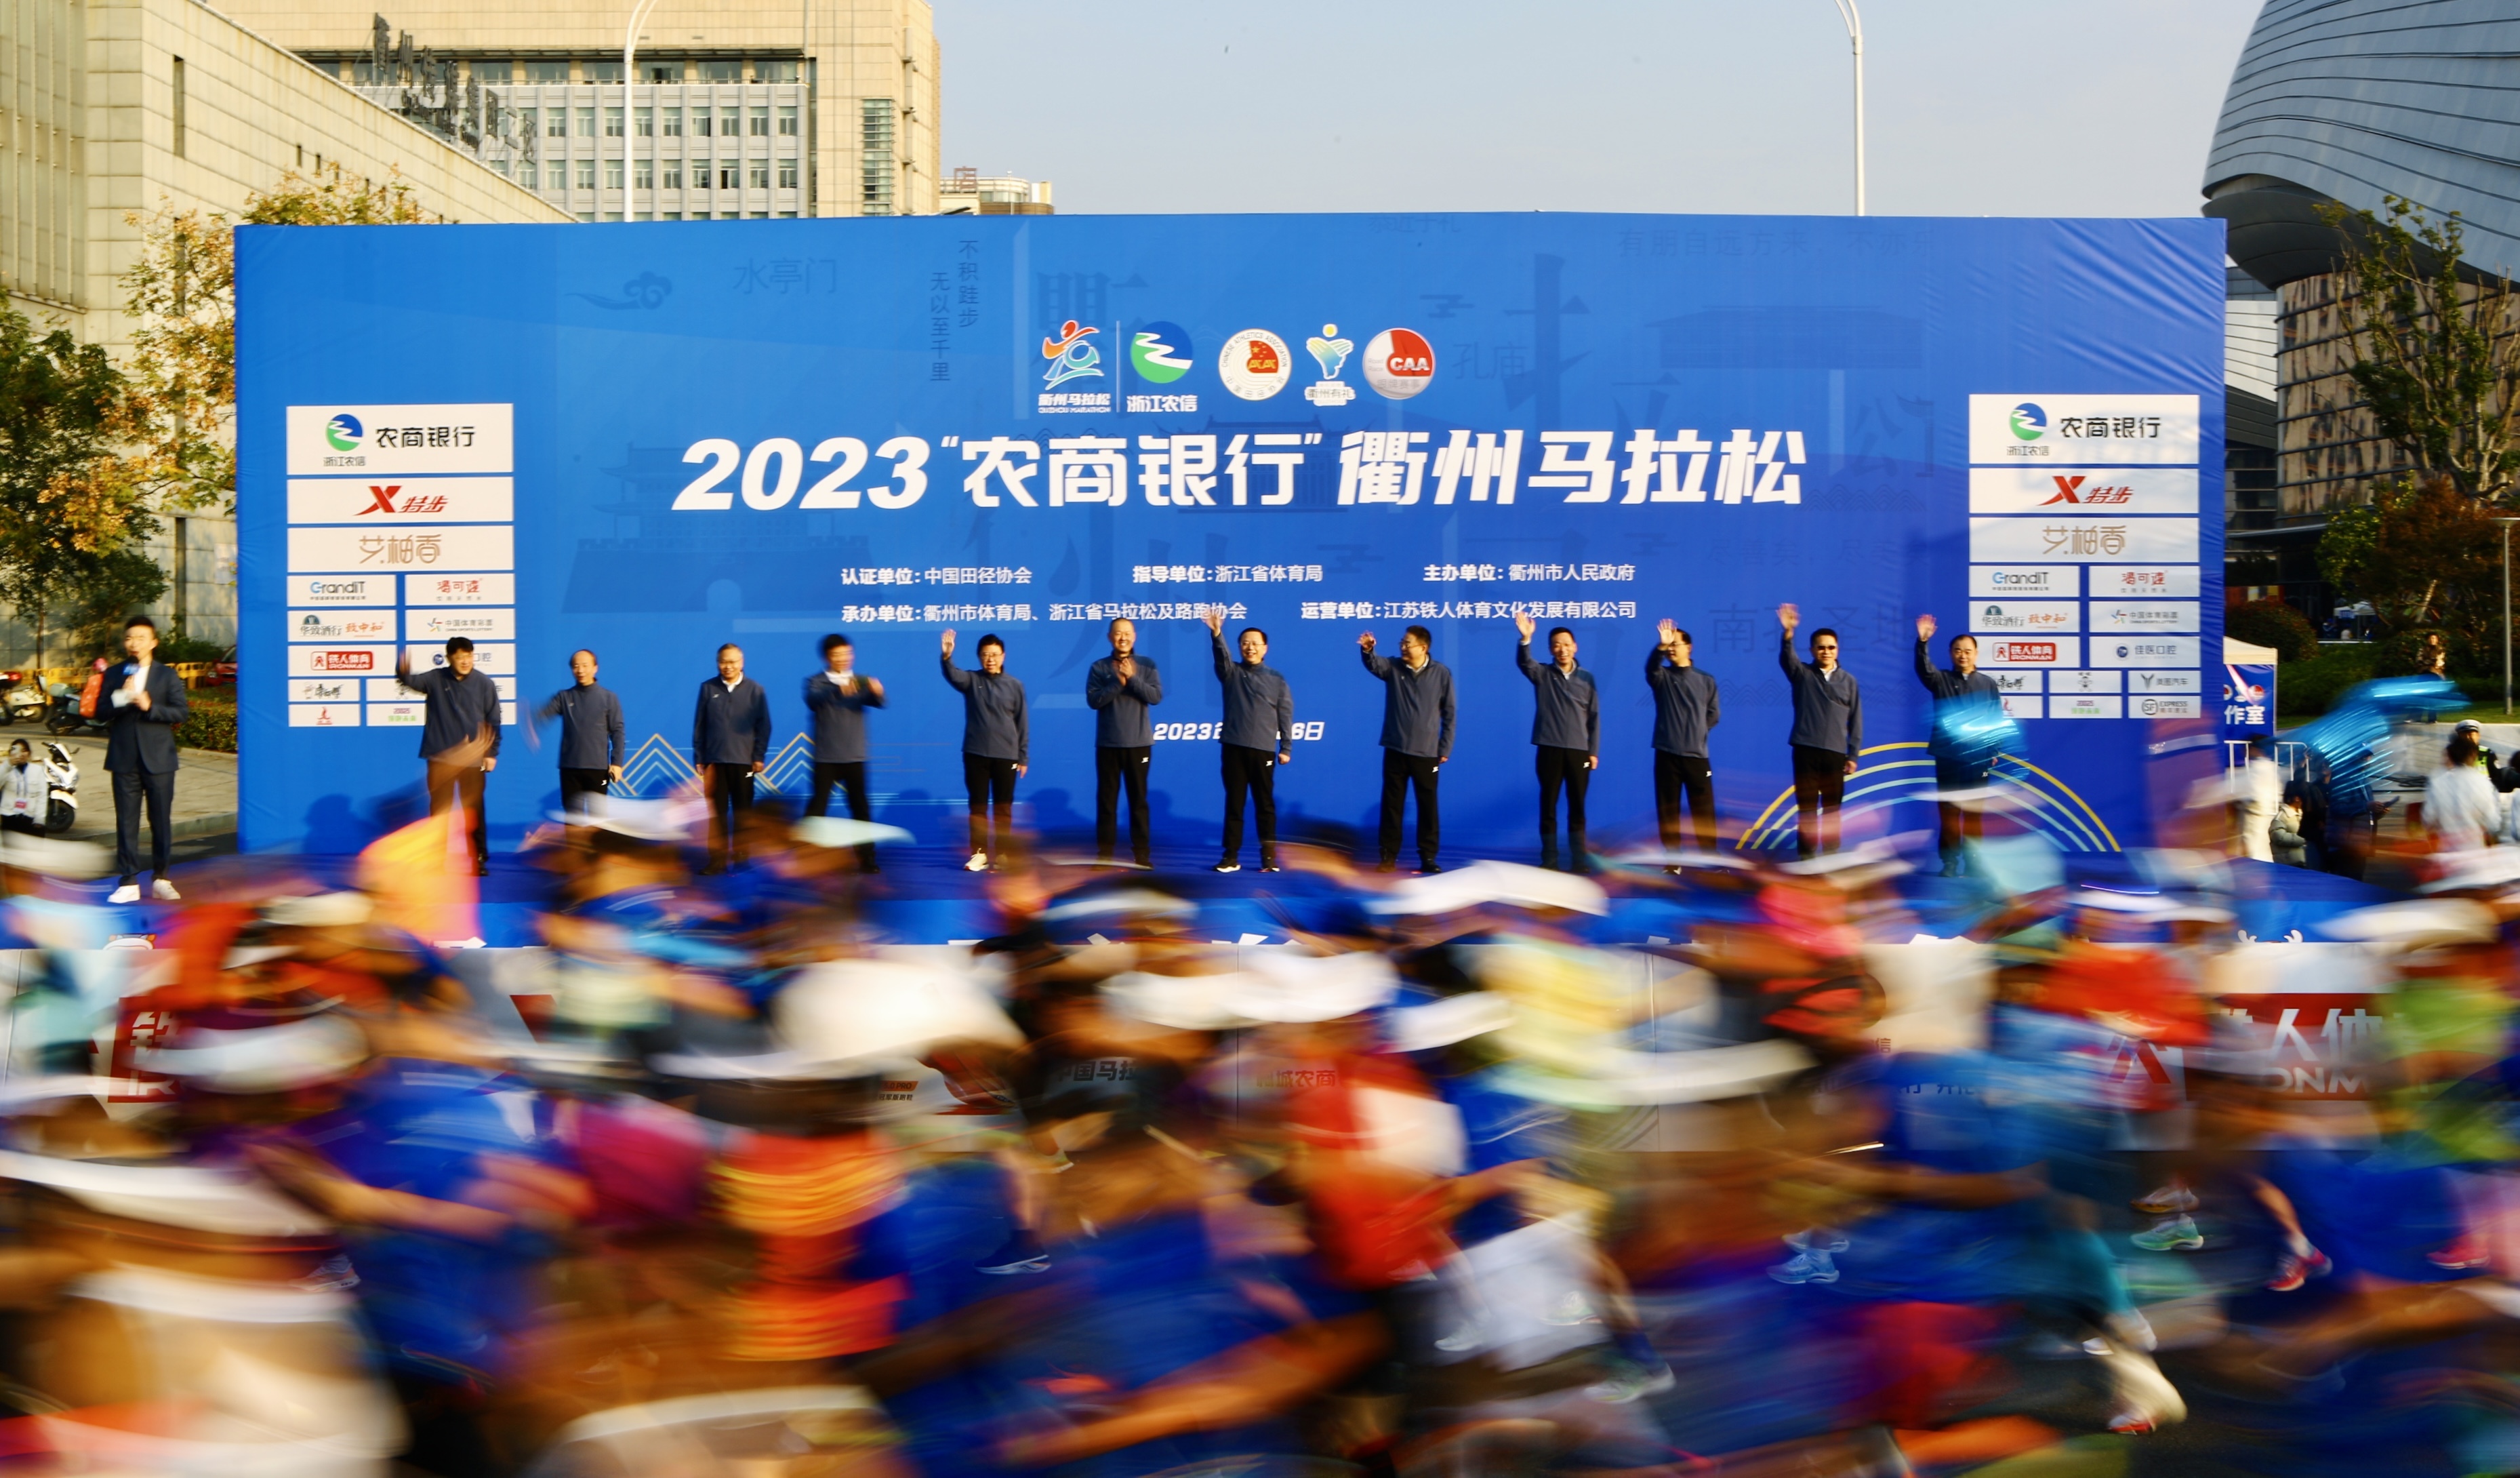 2023衢州马拉松热力开赛 近两万名跑者点燃“衢马之火”